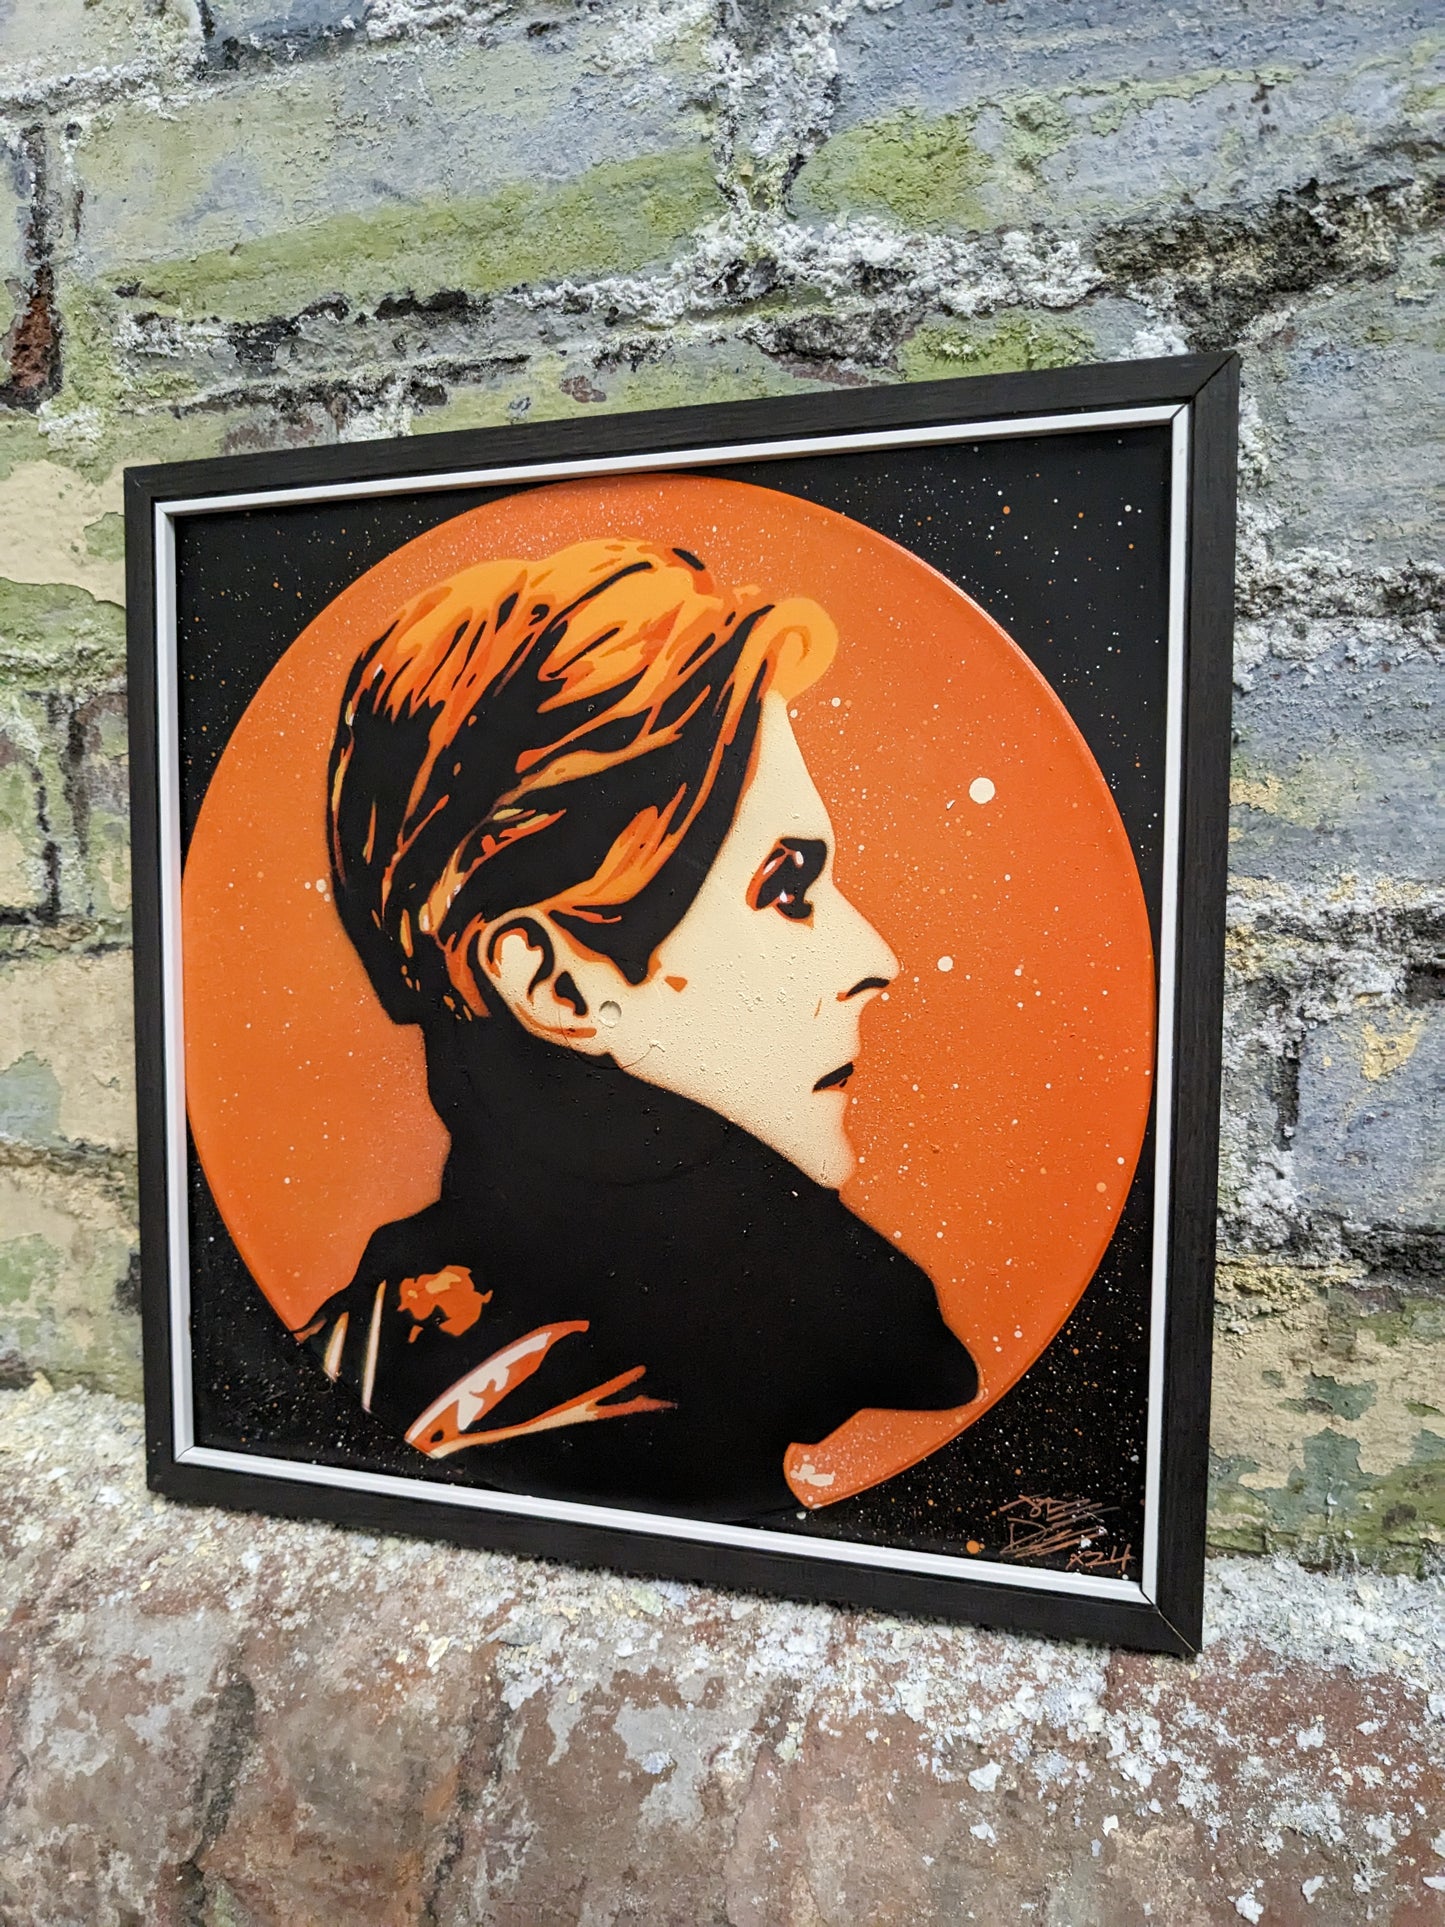 David Bowie (Low) 12" Vinyl Record